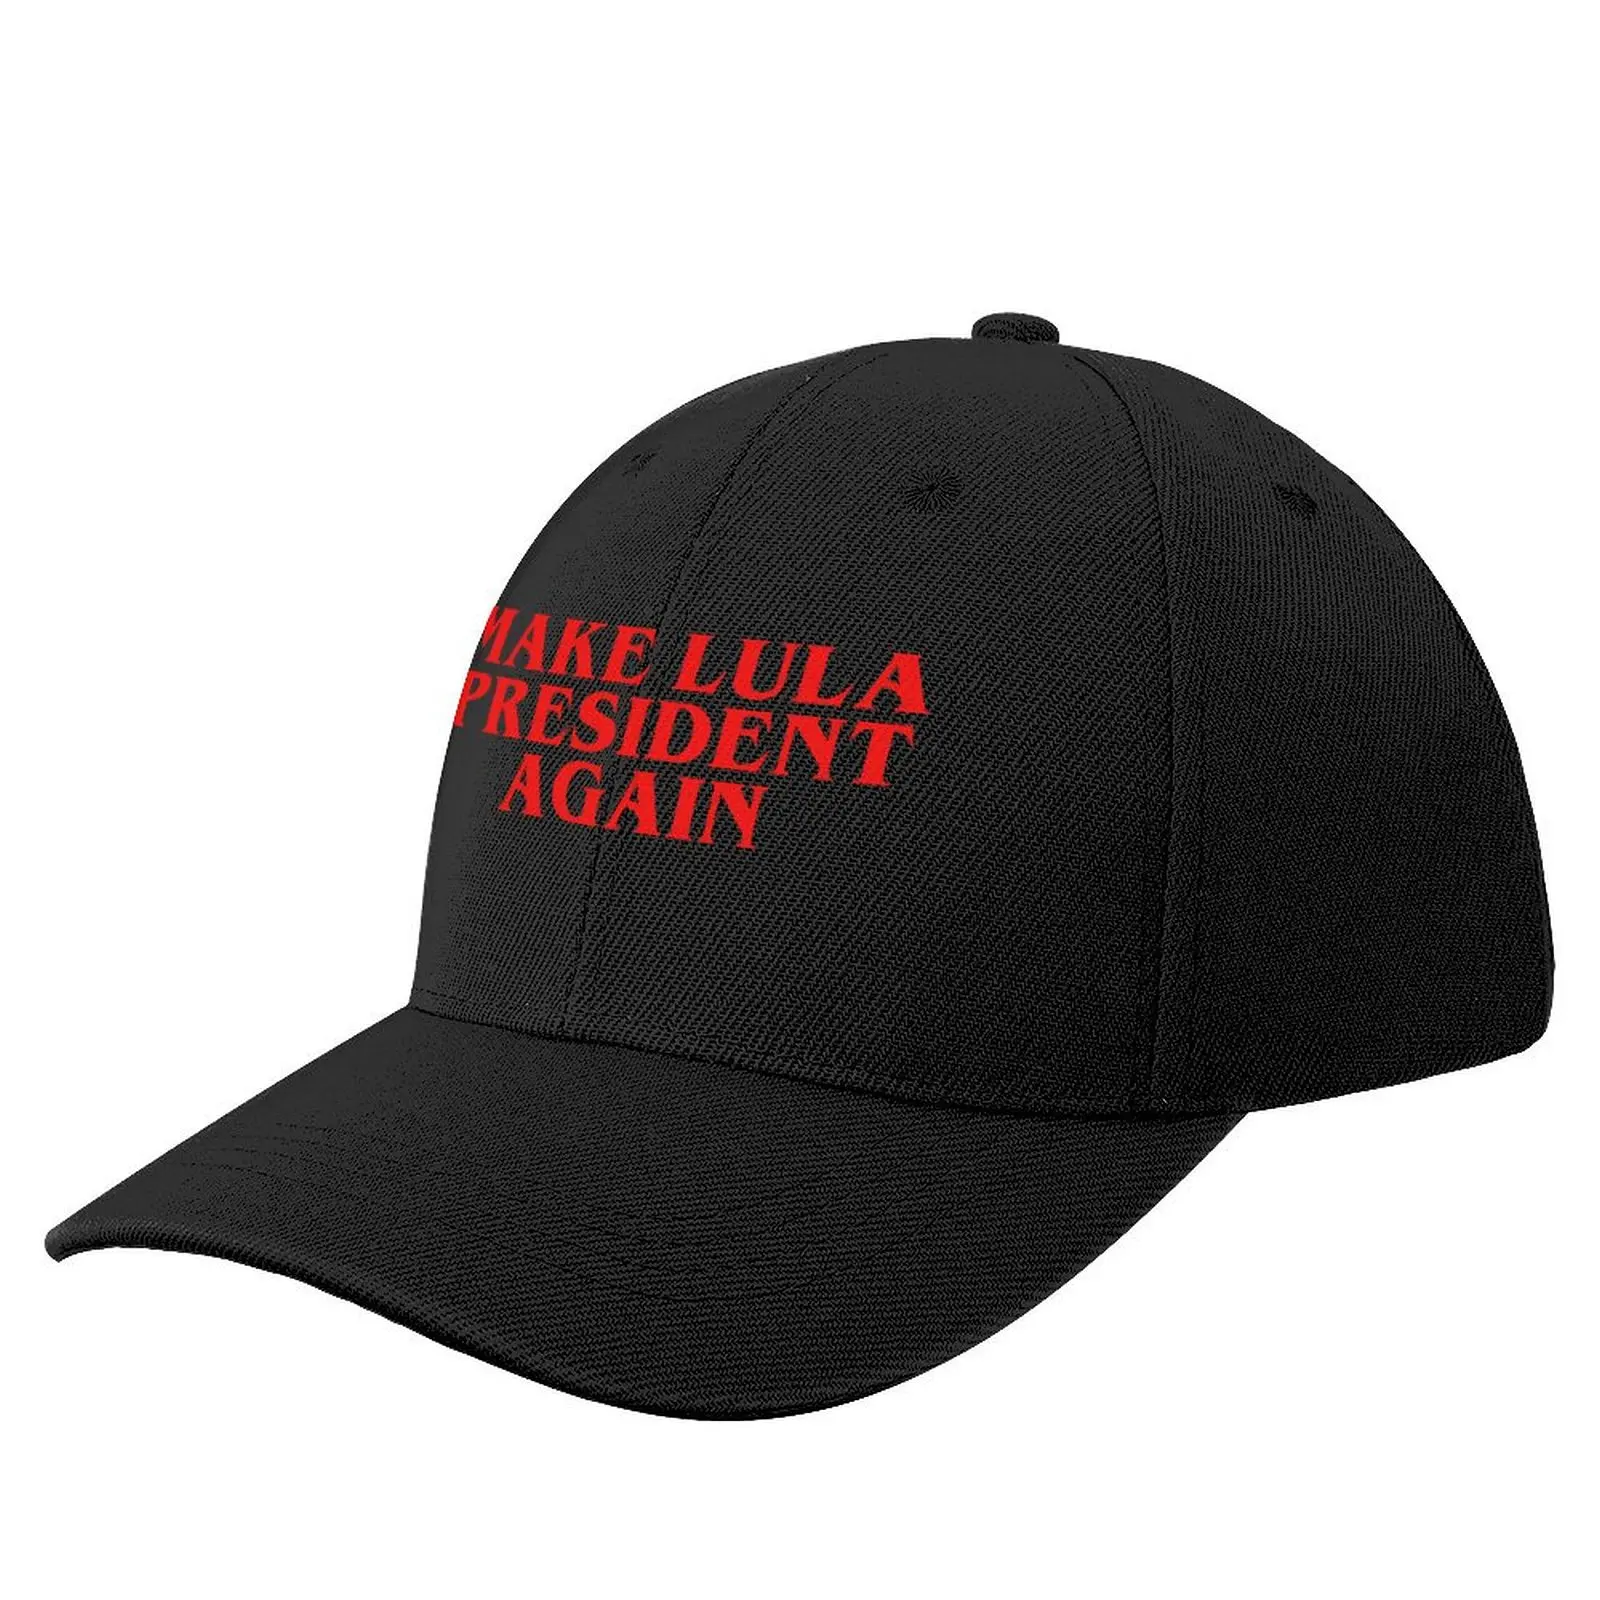 

Make Lula President Again, Lula 2022, Lula Presidente Baseball Cap Golf Wear Rave |-F-| Women's Men's